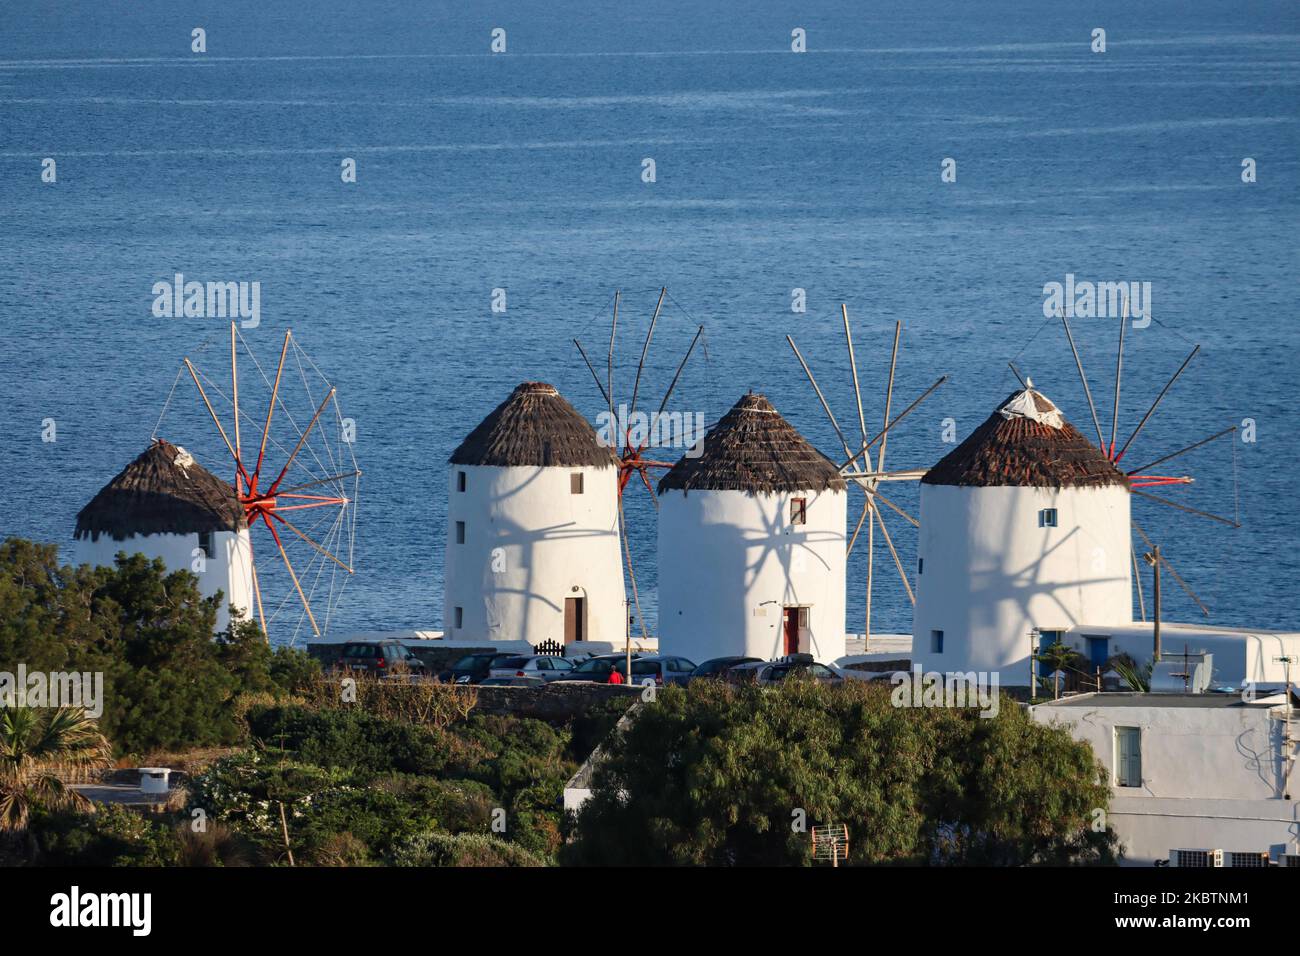 Am frühen Morgen Panoramablick auf die Windmühlen und Mykonos-Stadt, die Übersicht ist von einem Hügel aus gesehen. Die berühmten Windmühlen auf der Insel Mykonos, Kykladen-Inseln, Ägäis, Griechenland am 14. Juli 2020. Es gibt 16 Windmühlen auf der Insel, 5 davon oberhalb von Chora oder Mykonos Town, der Hauptstadt der Insel. Die Windmühlen wurden im 16.. Jahrhundert von den Venezianern gebaut, aber ihre Bauten dauerten bis zum 20.. Jahrhundert an. Die berühmte griechische Mittelmeerinsel wird mit weiß getünchten traditionellen Gebäuden wie Windmühlen oder einer kleinen Kirche als Insel der Winde bezeichnet. Mykonos ist eine beliebte Insel Stockfoto